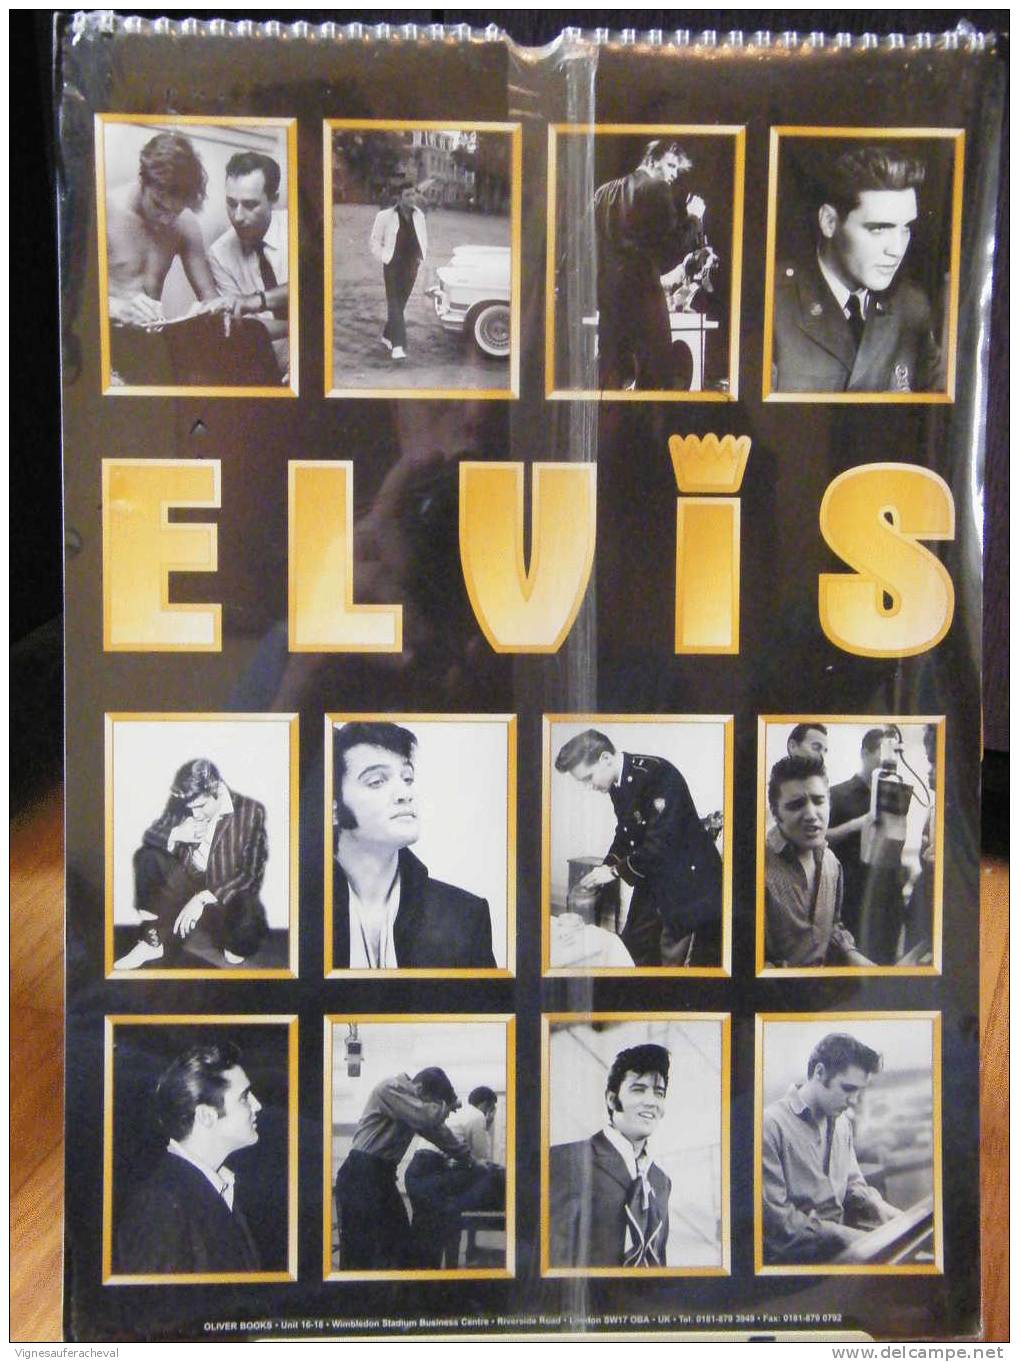 Calendriers Rock.Elvis Presley 1996 - Plakate & Poster